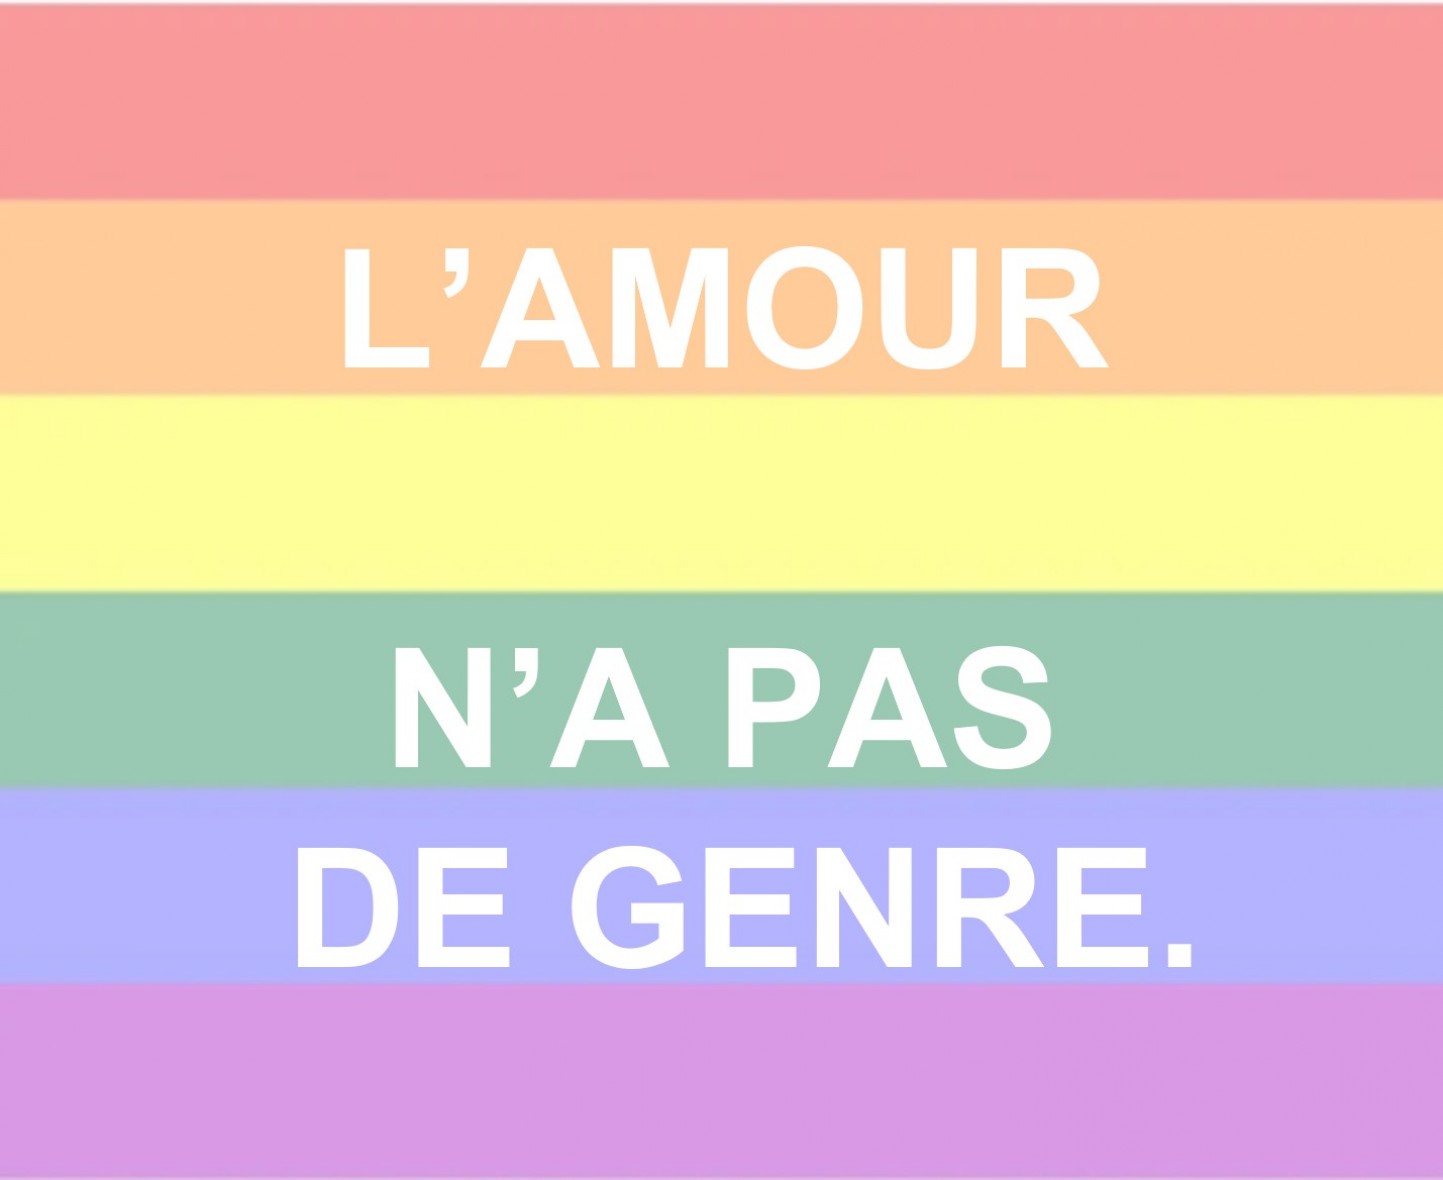 VERNISSAGE DE L'EXPOSITION "DES SLOGANS POUR EFFACER LES HAINES" à 18h30 Centre LGBTQIA+ Nice